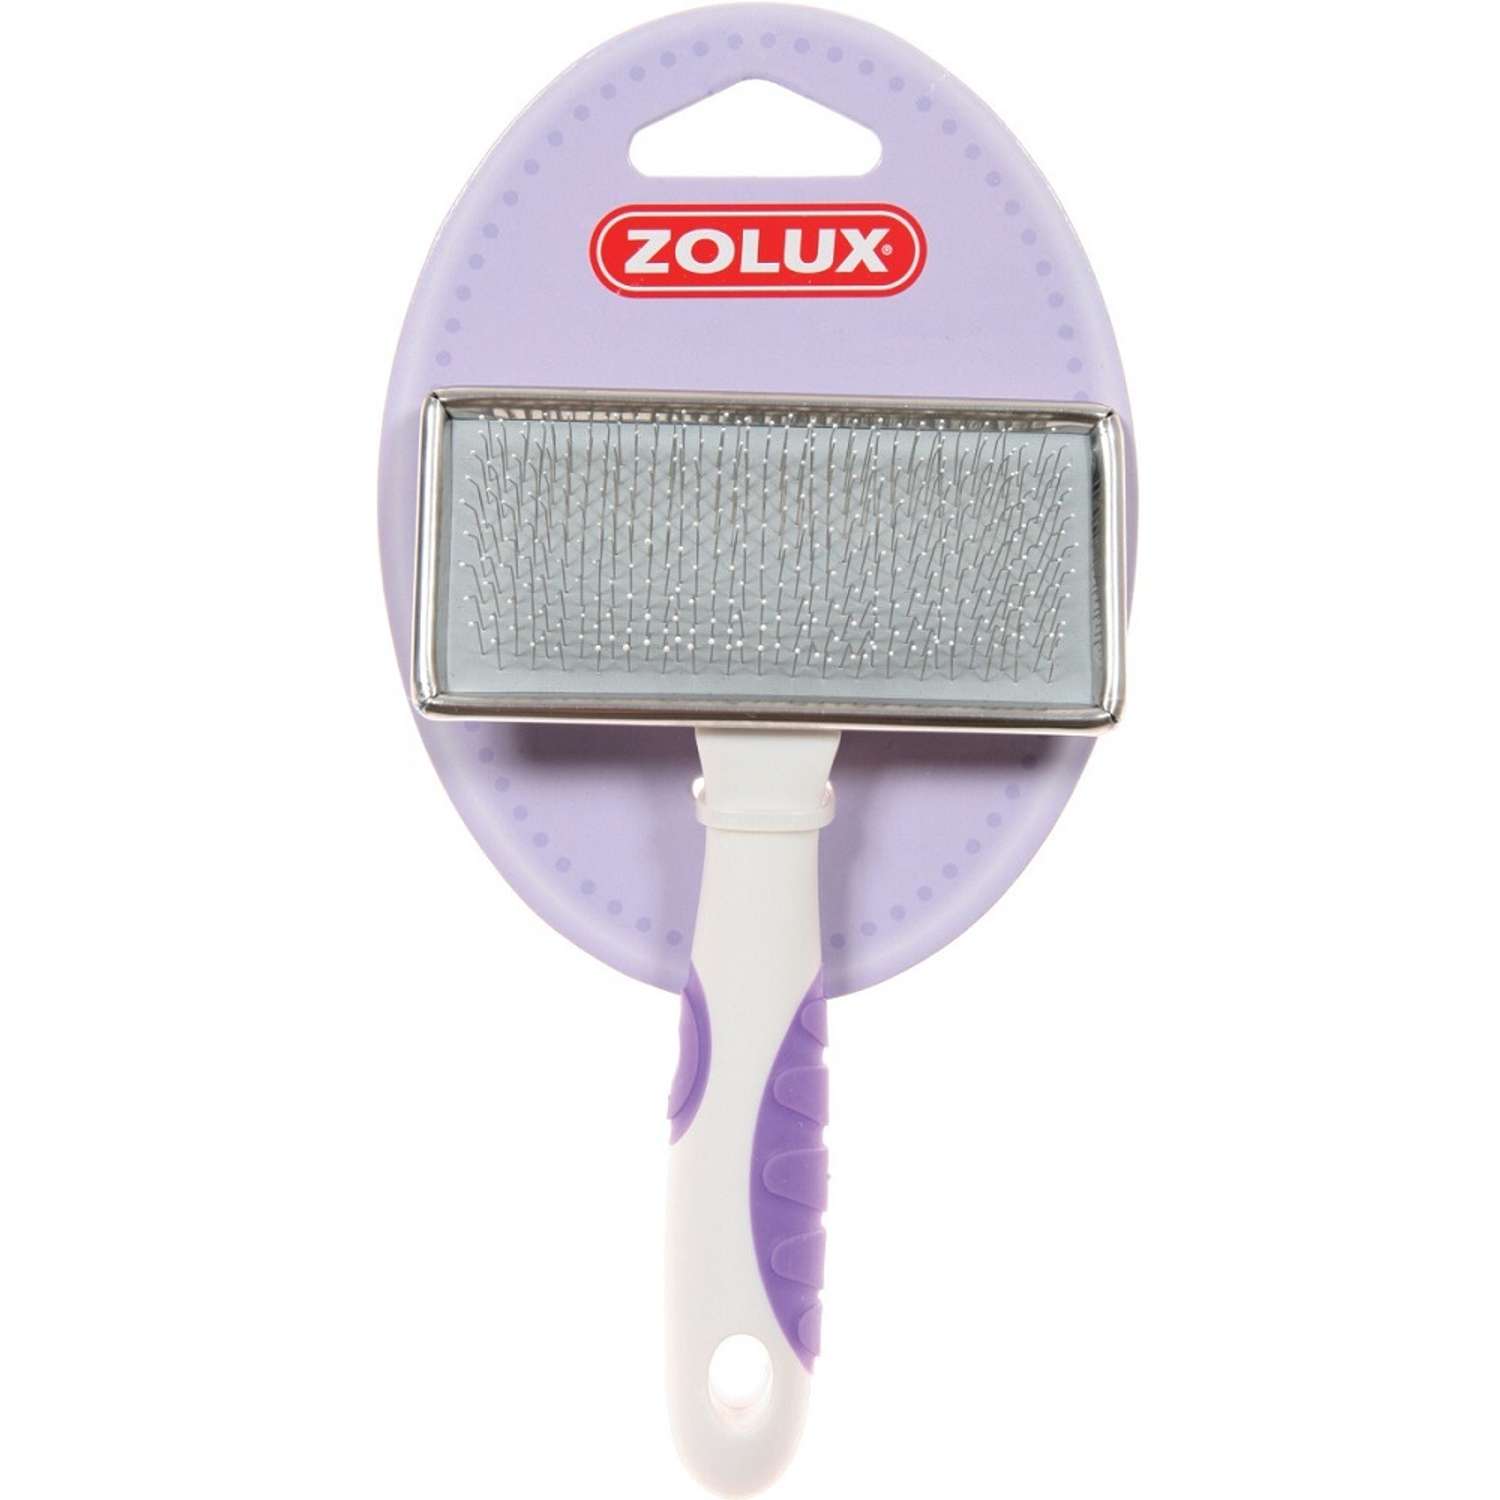 Пуходерка для кошек Zolux металлическая средняя Бело-фиолетовая - фото 1